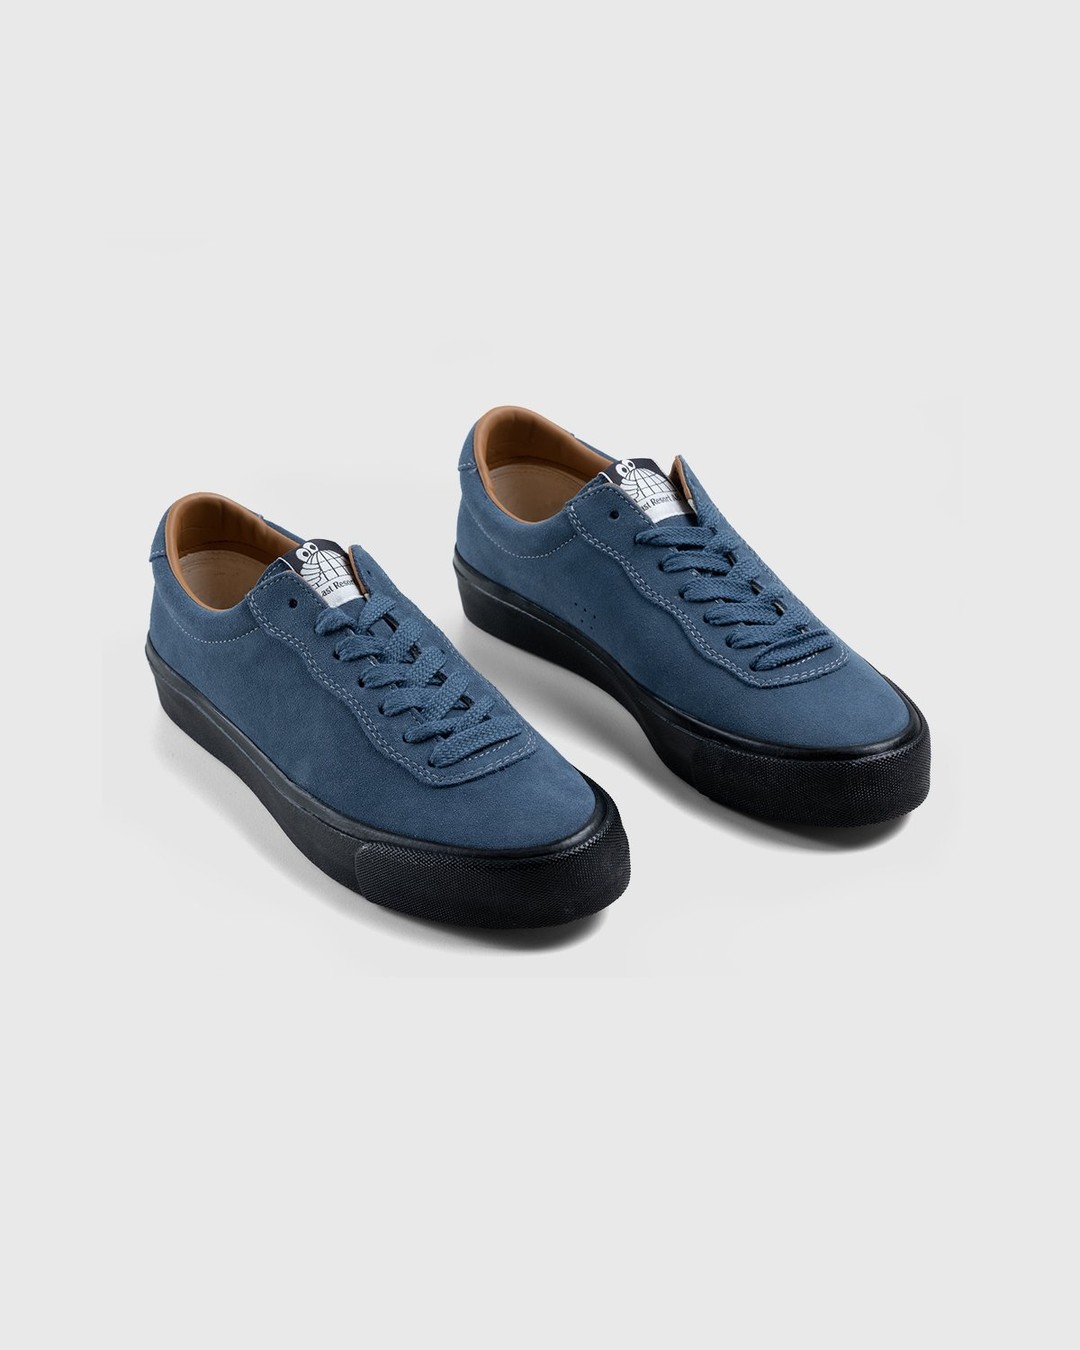 Last Resort AB – VM001 Suede Lo Blue/Black - Low Top Sneakers - Blue - Image 3